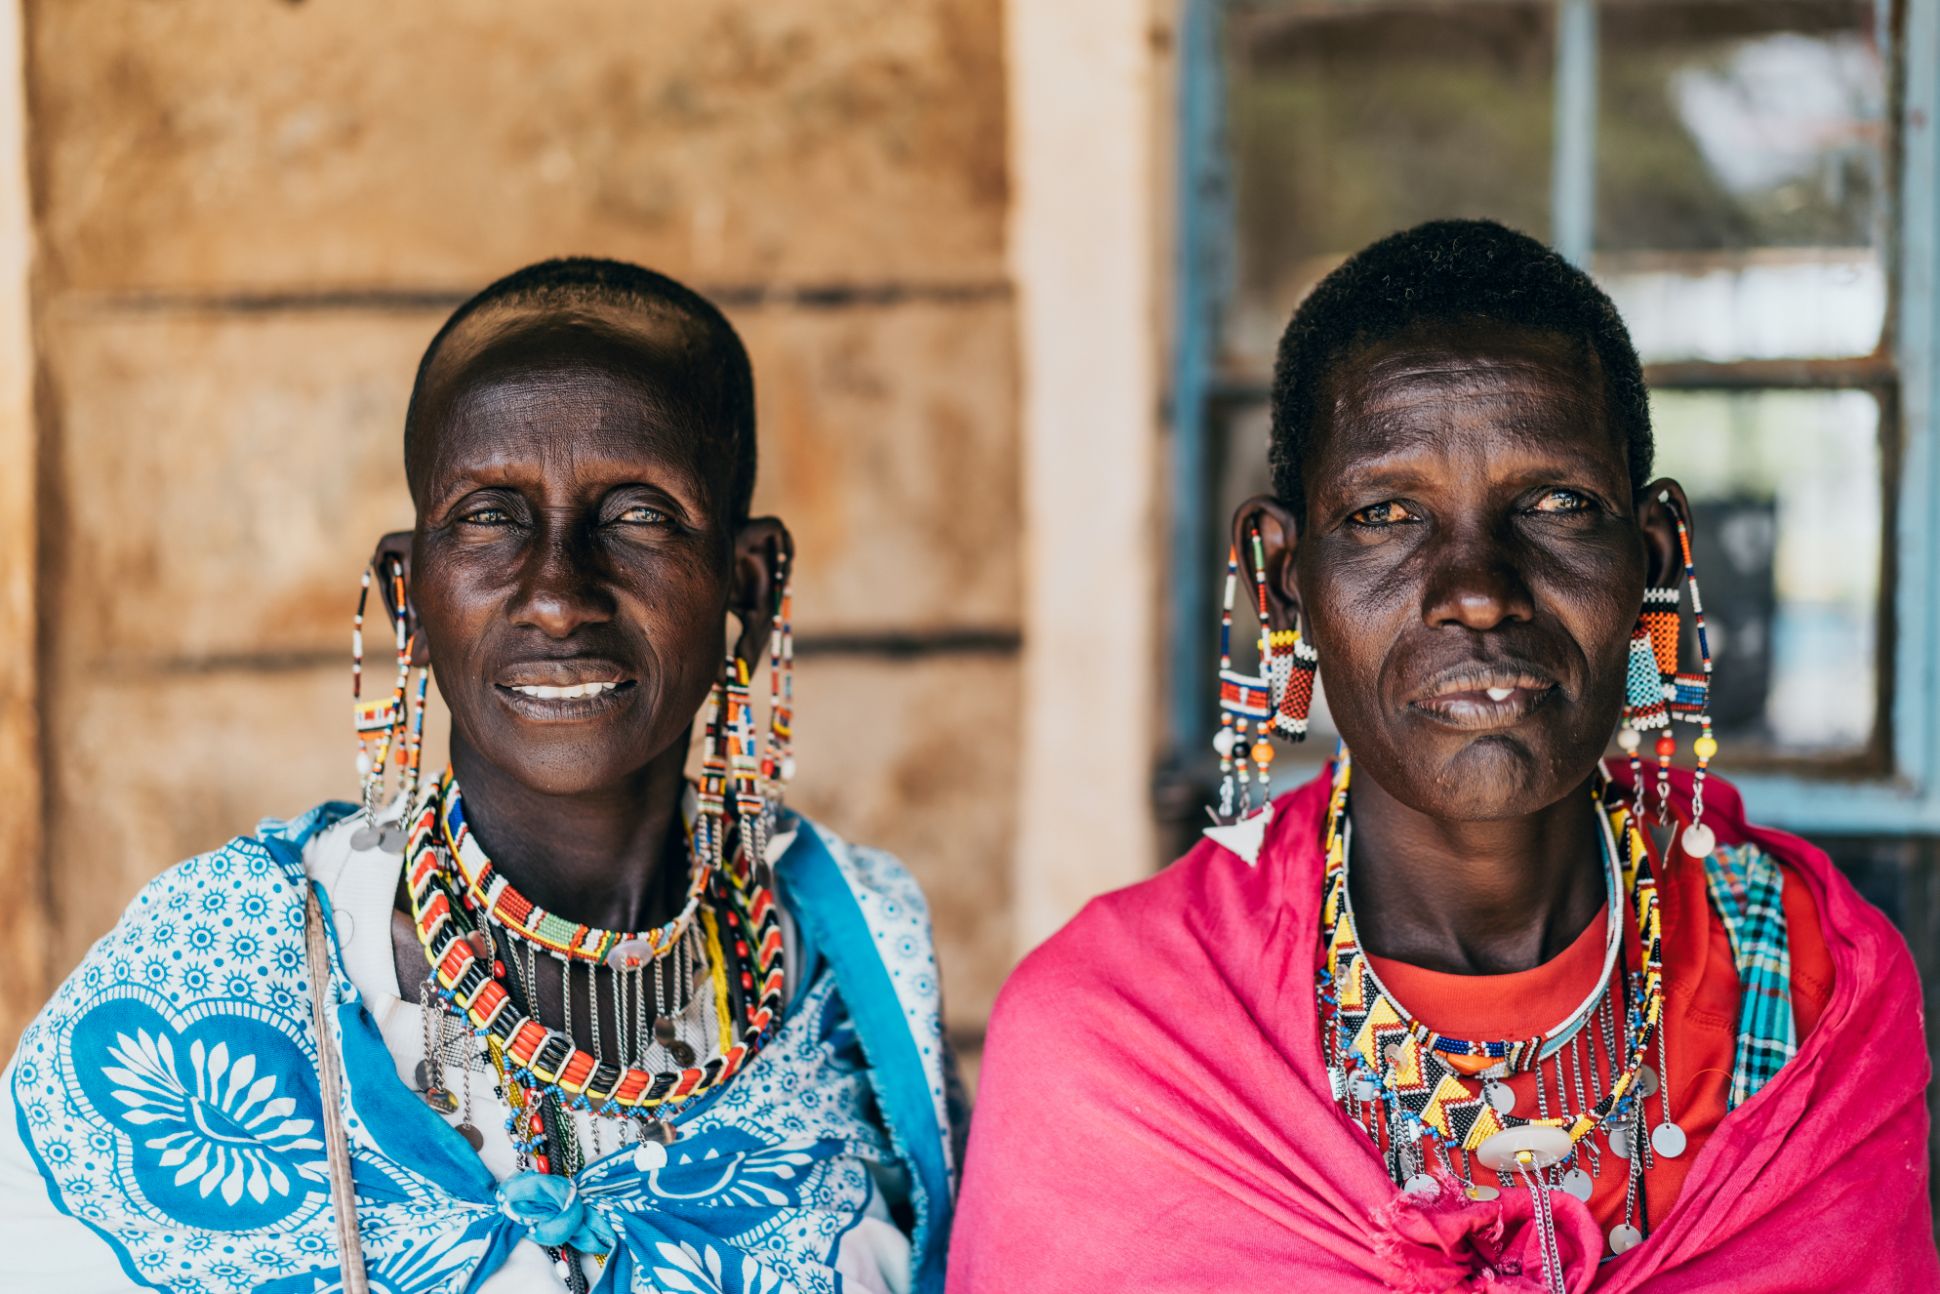 Two people. Kenya, Africa